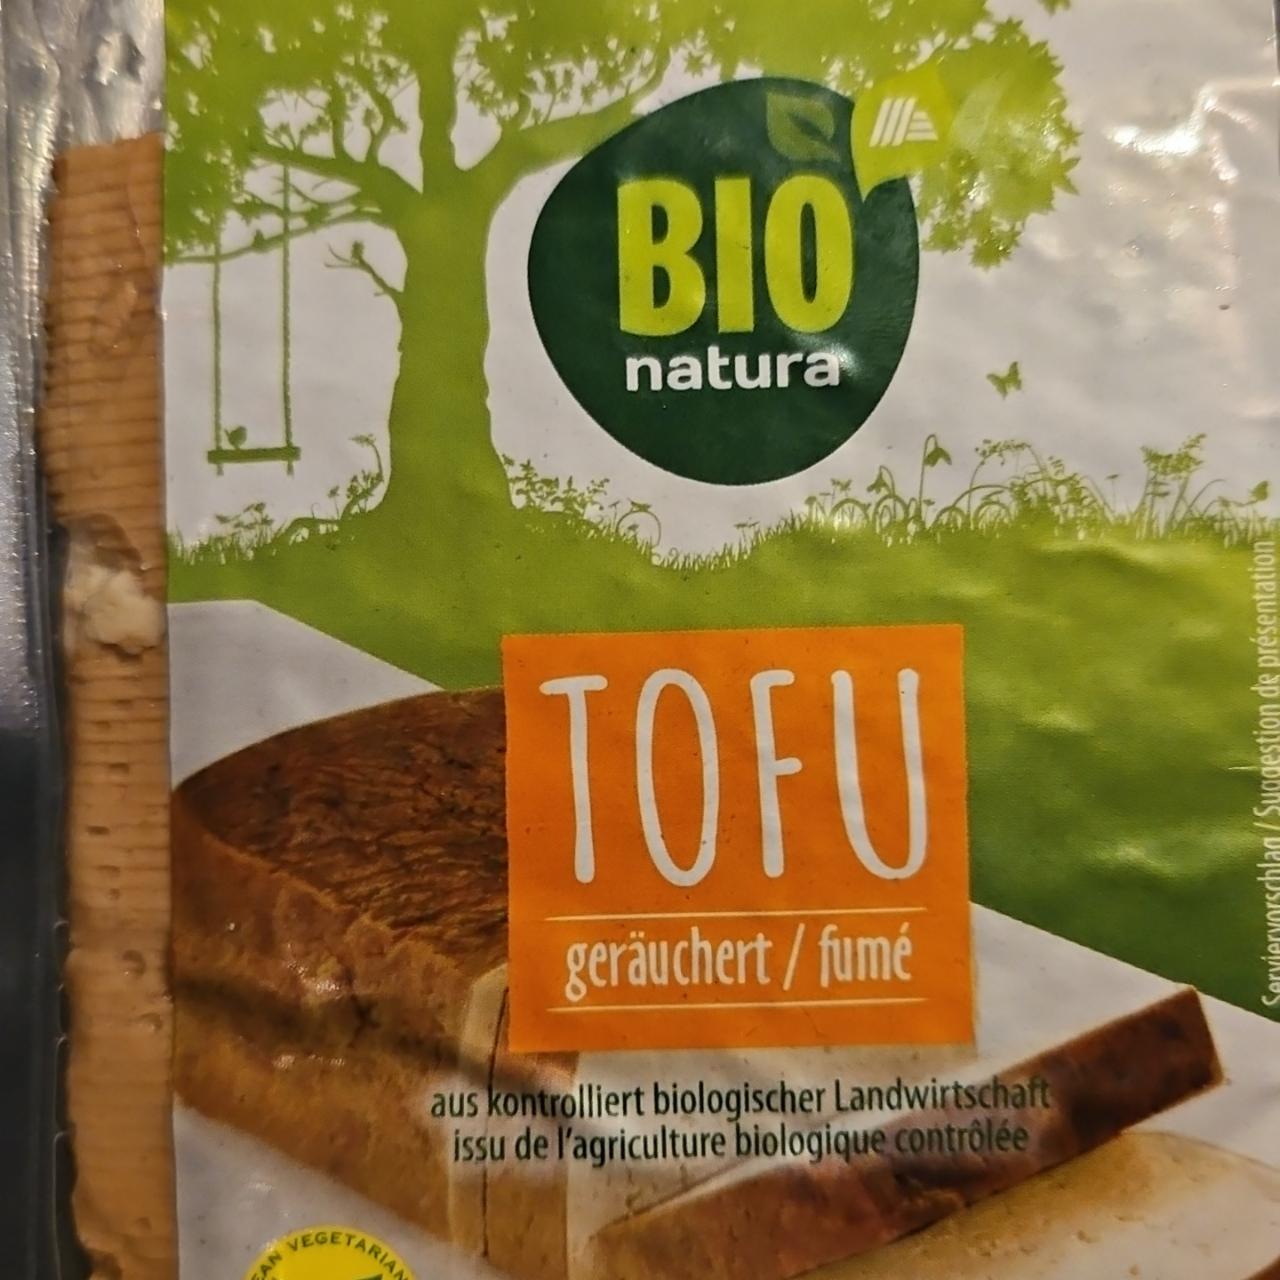 Fotografie - Tofu geräuchert Bio natura